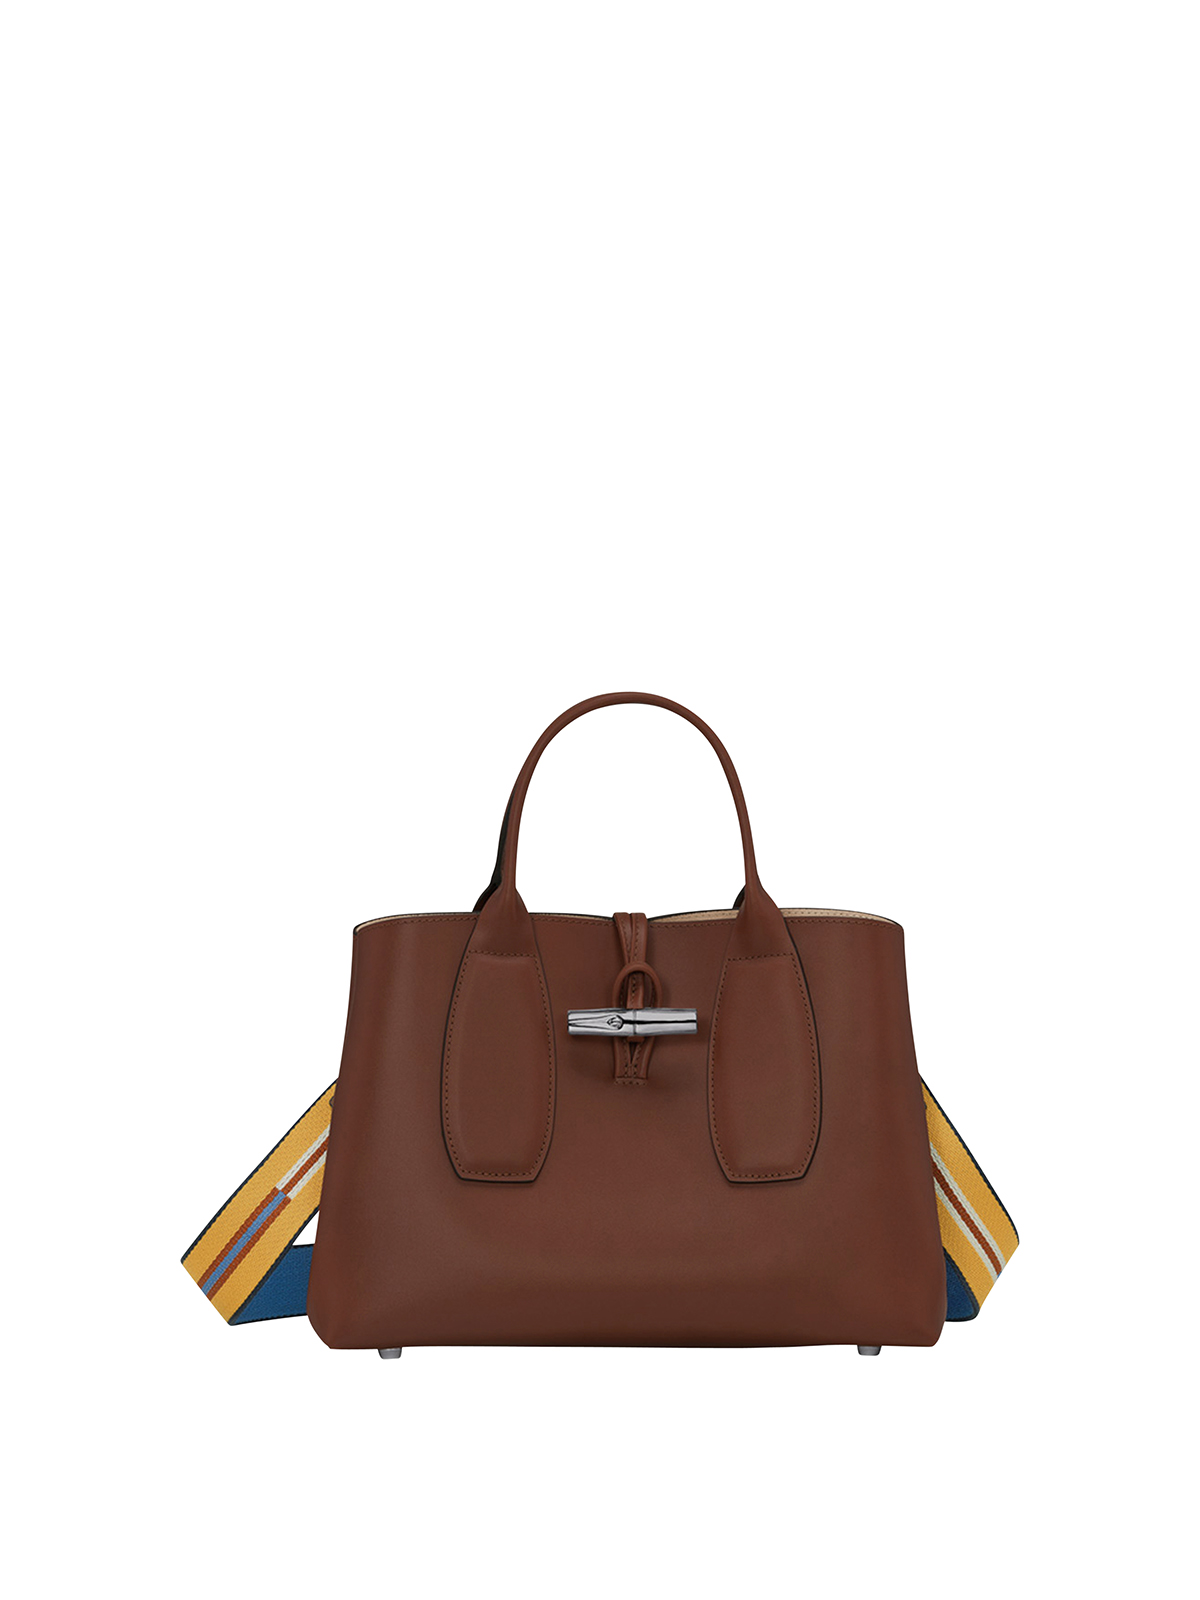 Longchamp Shopping Bag In Dark Brown